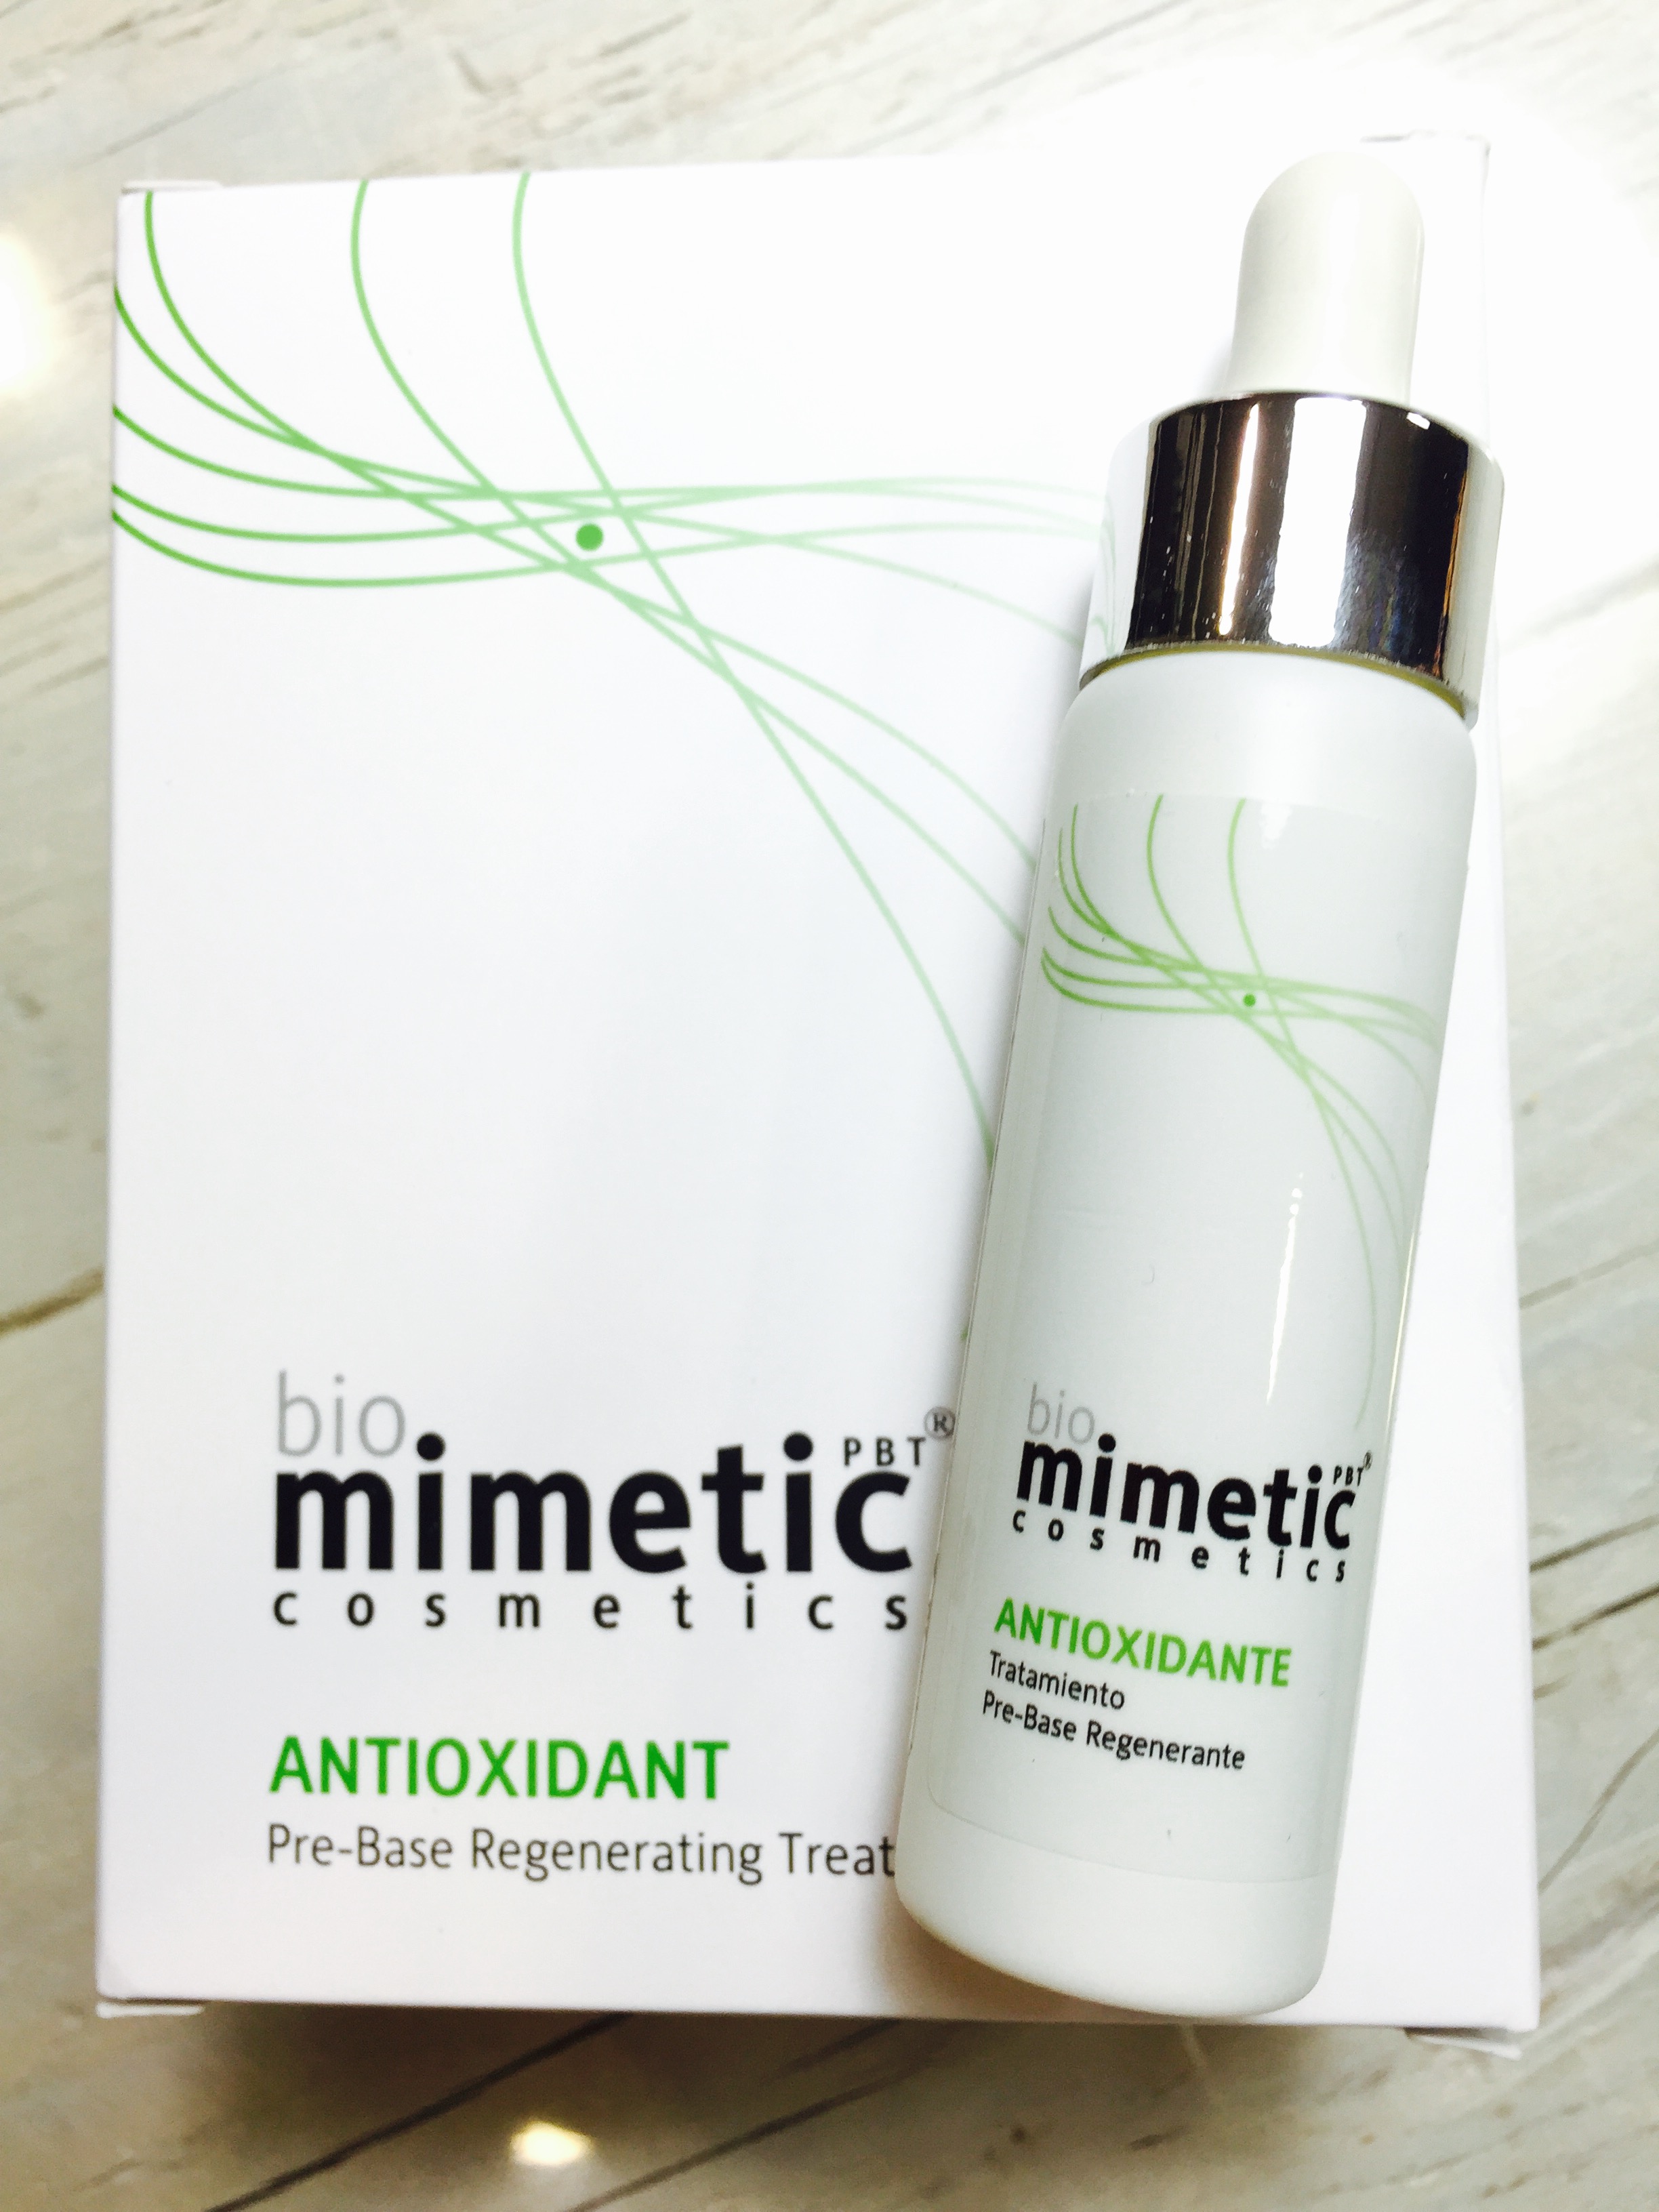 biomimetic-cosmetics-antioxidante-farmaconfianza